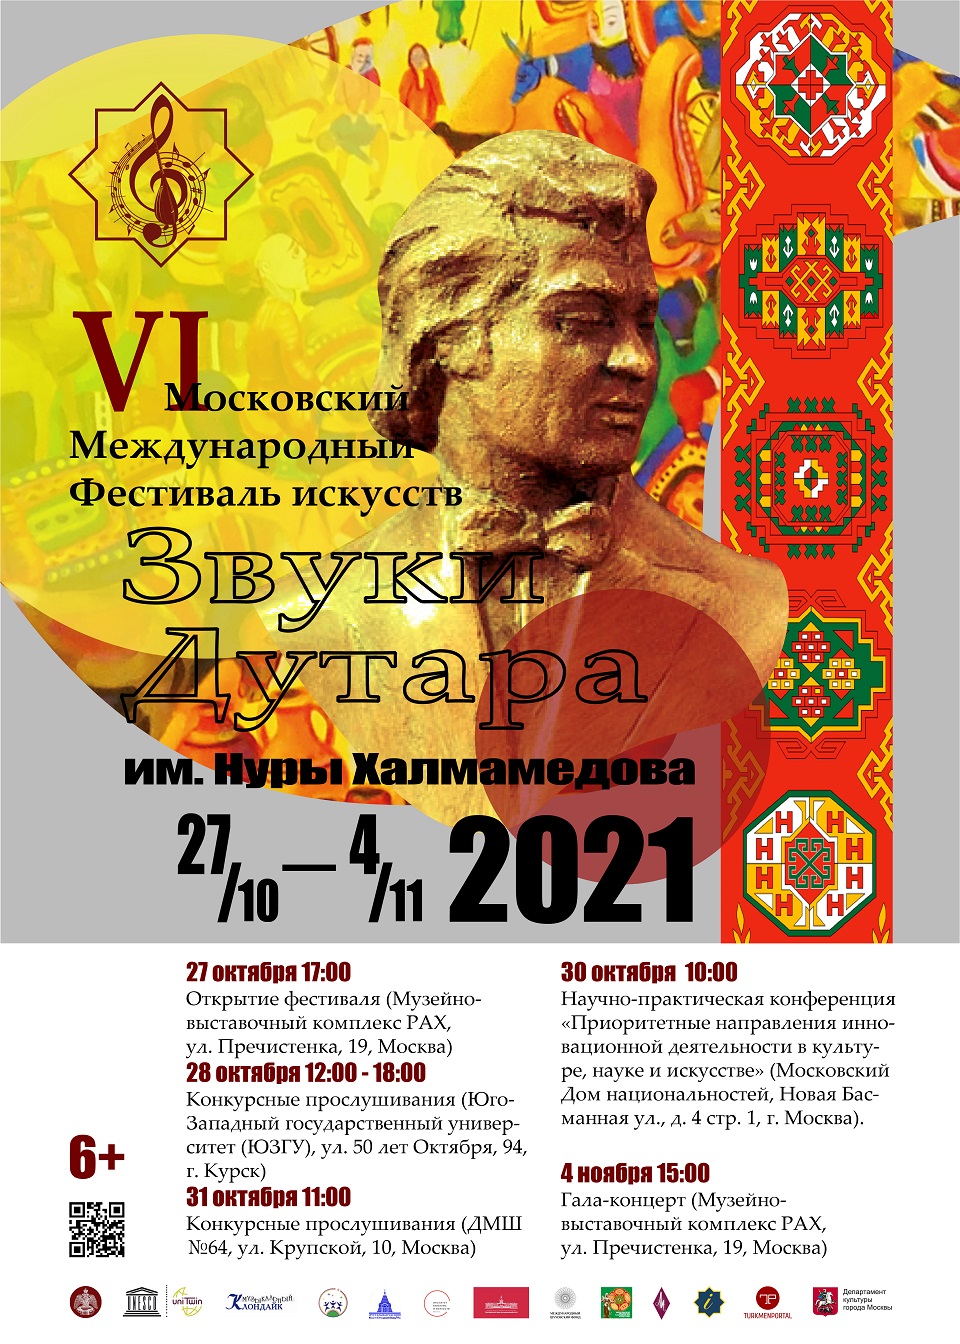 Международный фестиваль Звуки дутара 2020